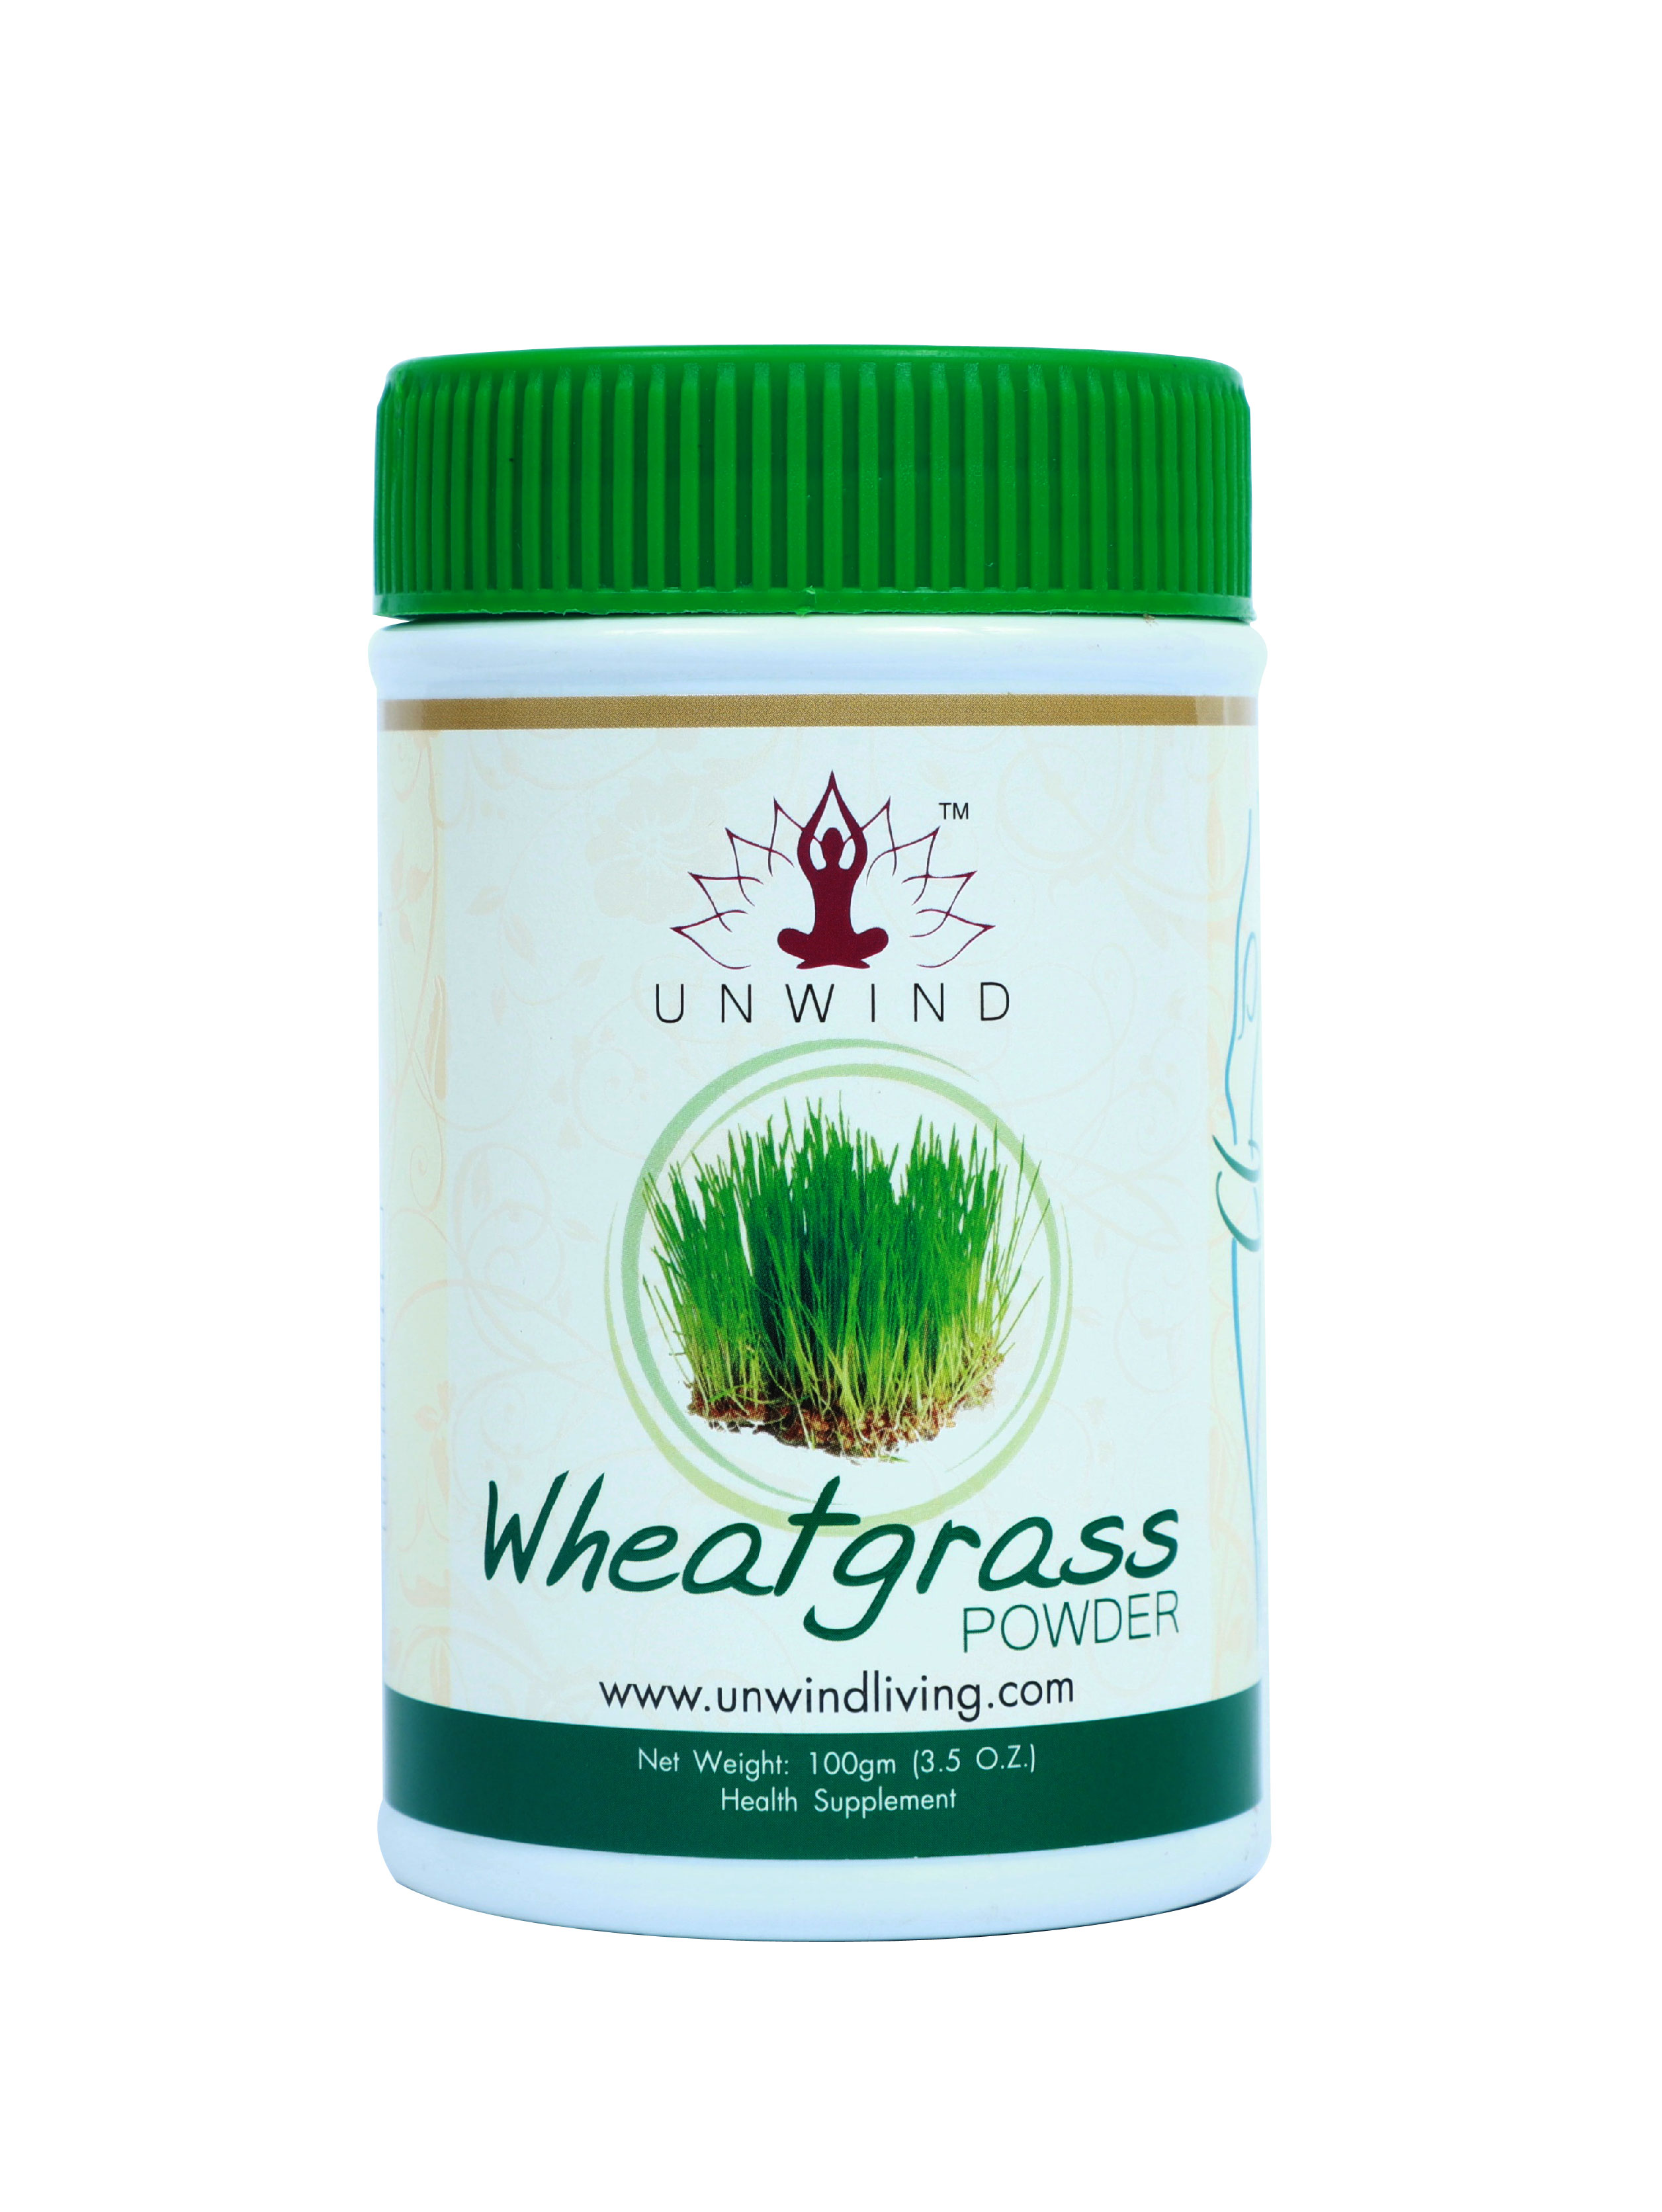 Buy Unwind Wheatgrass Powder at Best Price Online